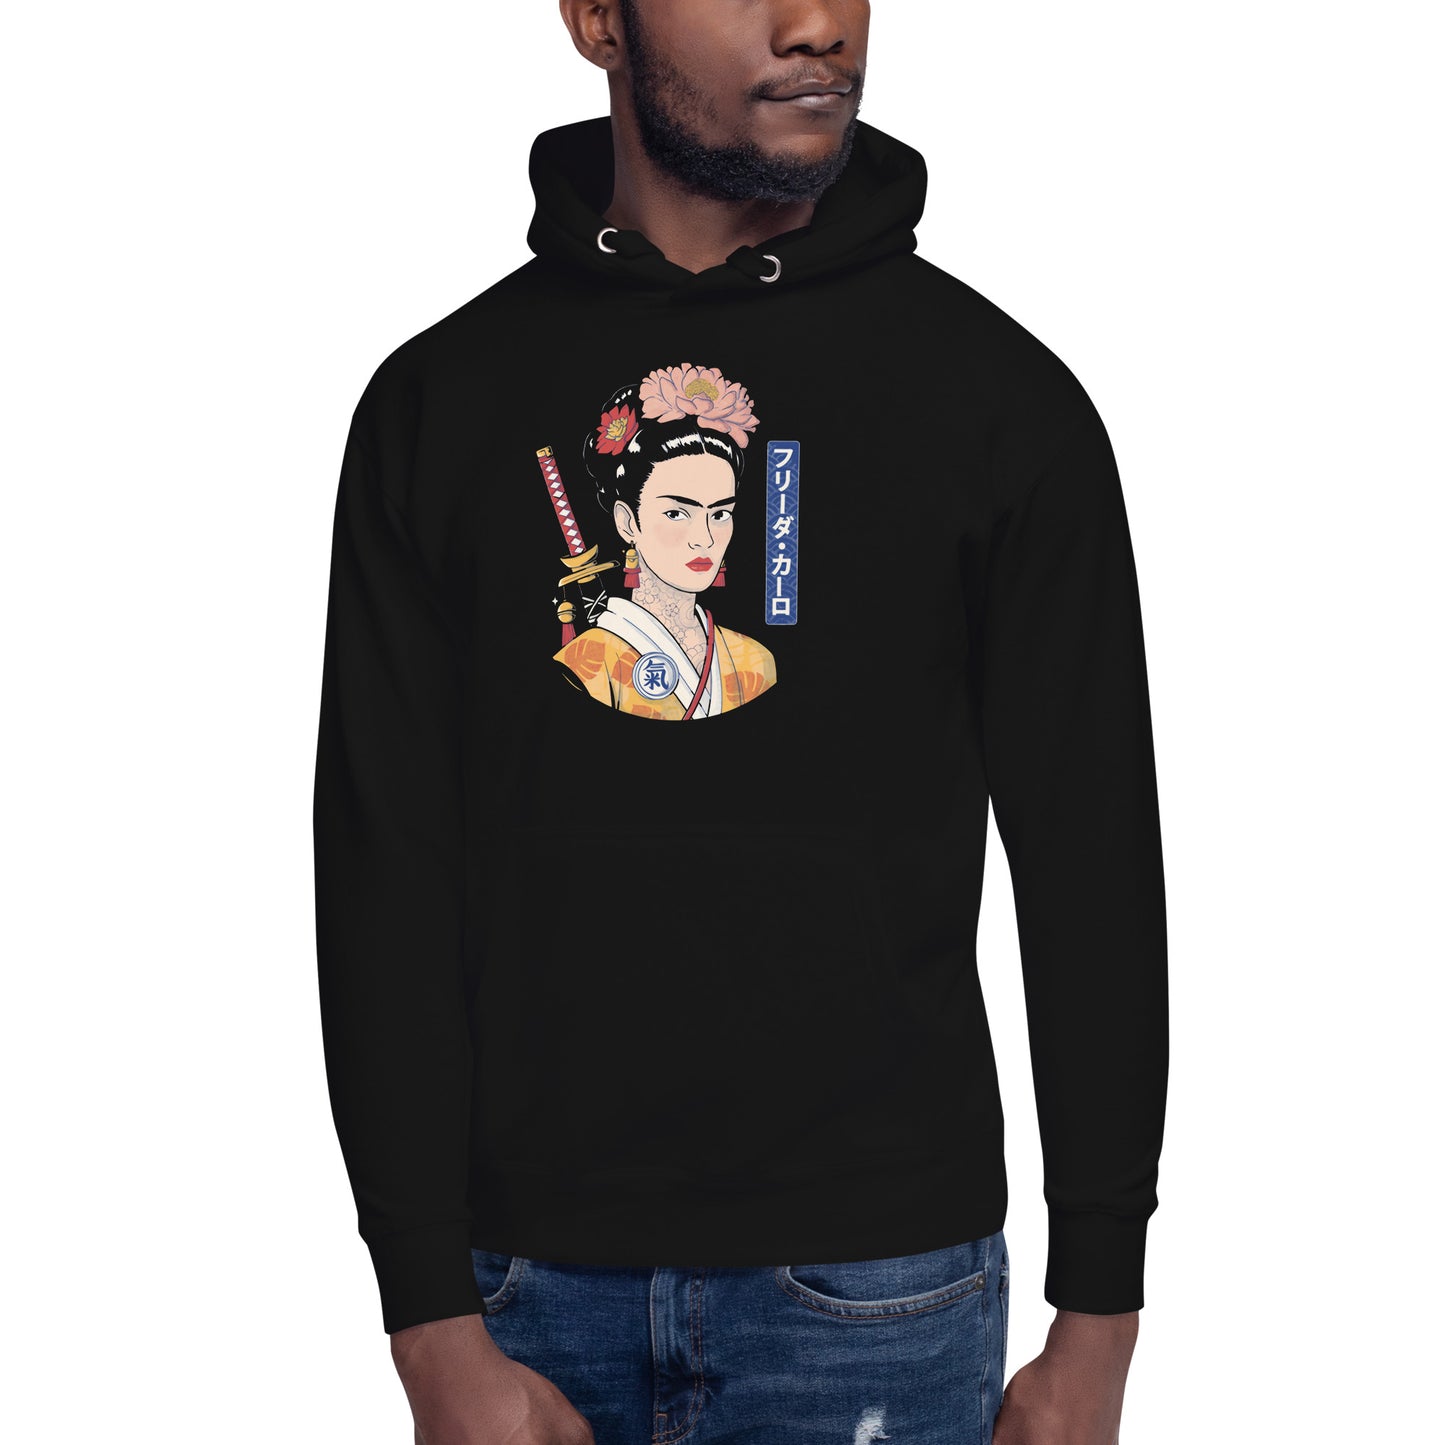 Hoodie de Frida Samurai, Descubre calidad excepcional y estampados duraderos. Encuentra estilo y orgullo en cada prenda. Compra ahora!